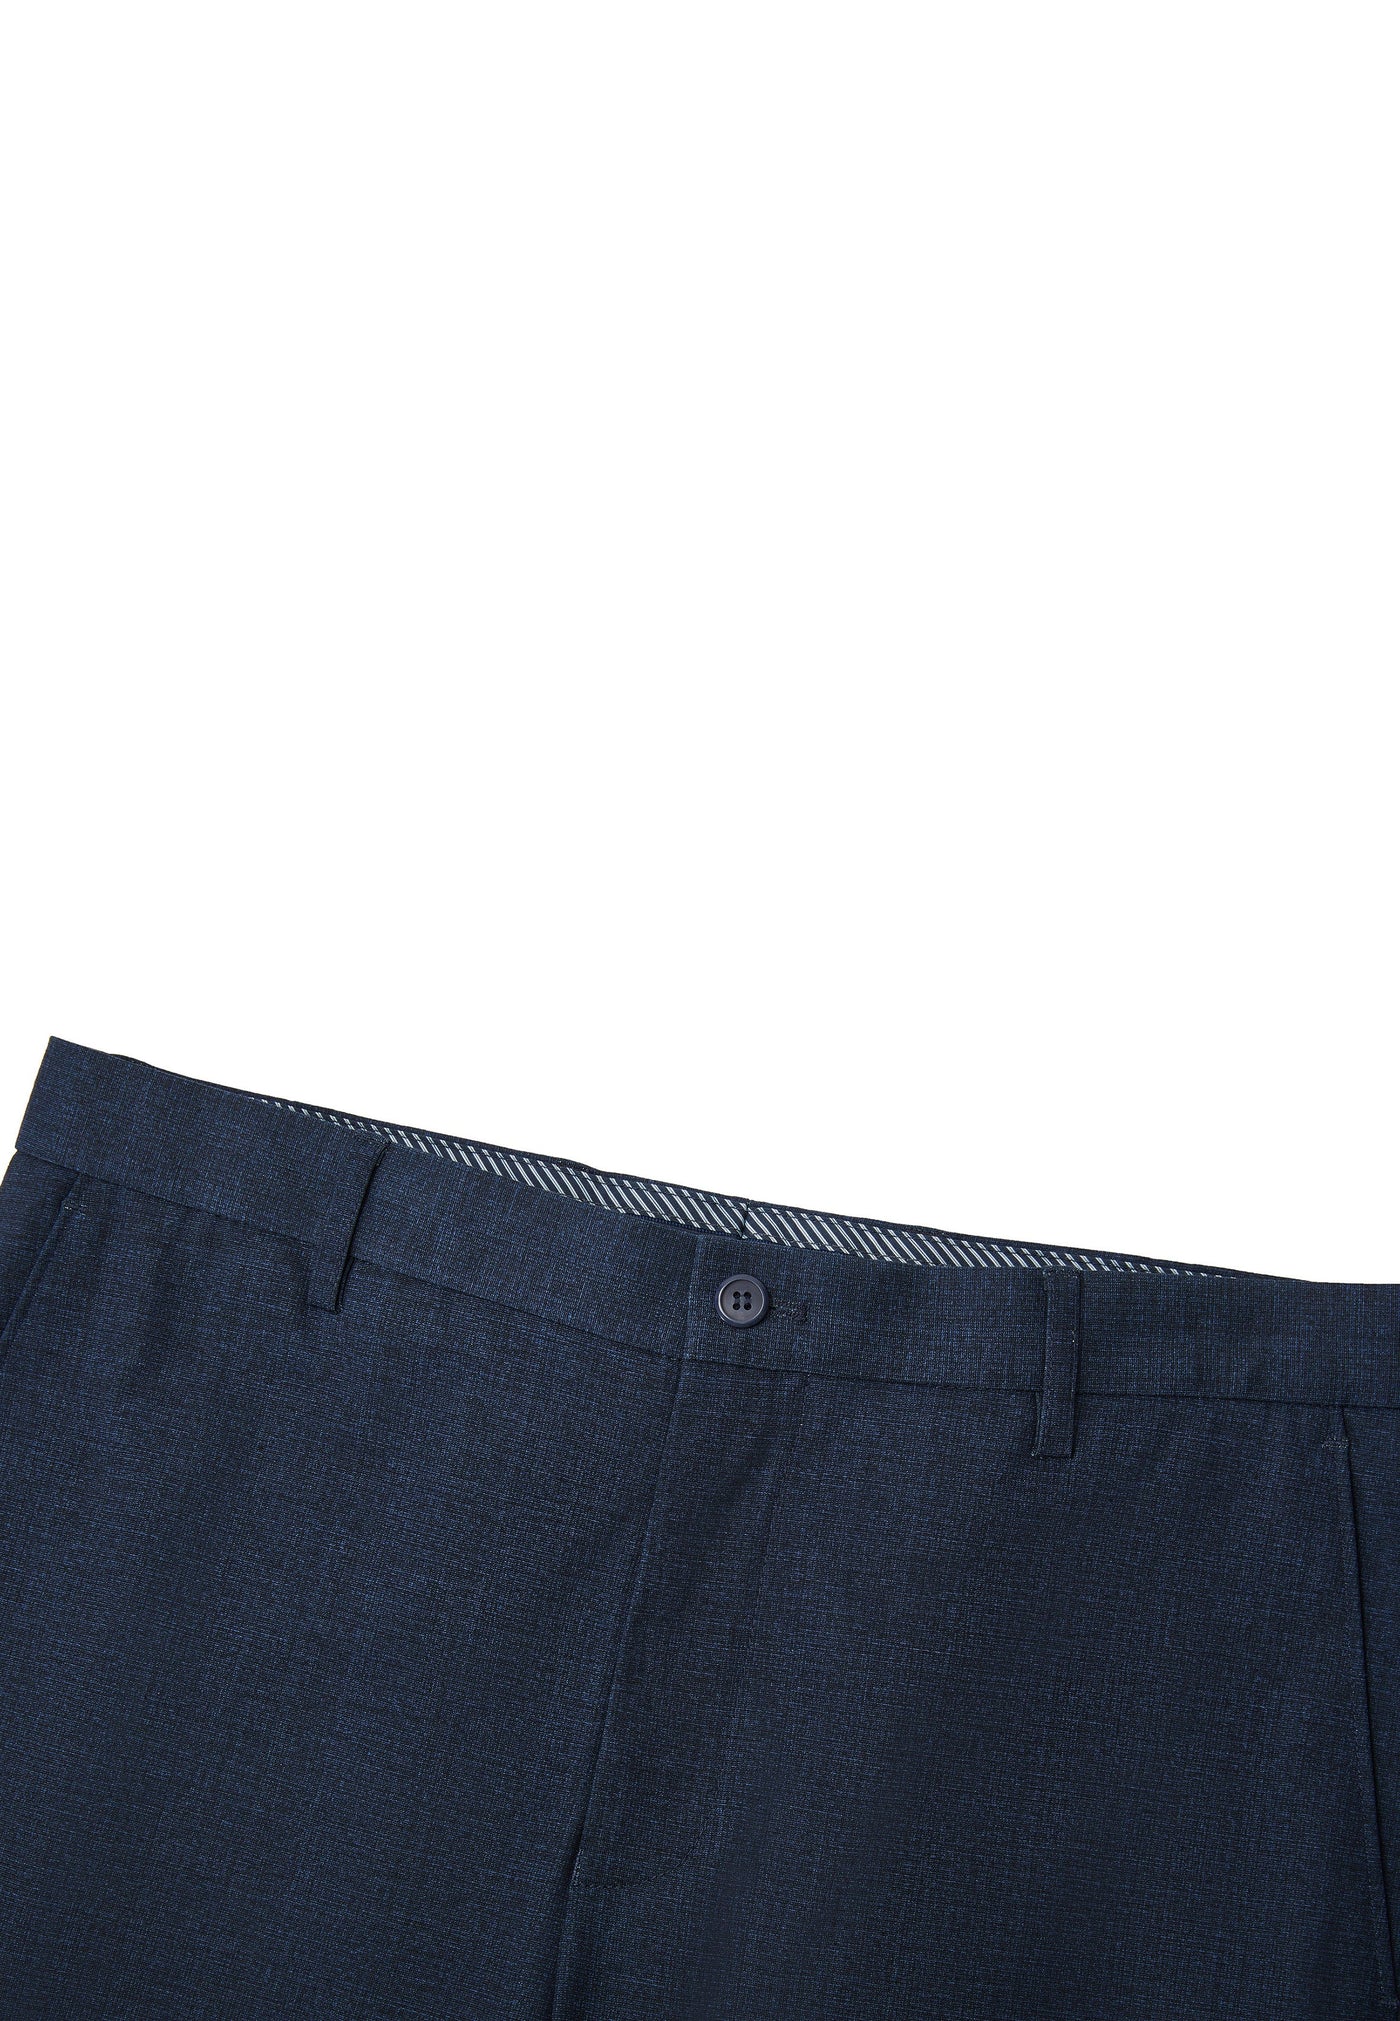 กางเกงขายาวแบบทางการสำหรับผู้ชาย - Smart Fit